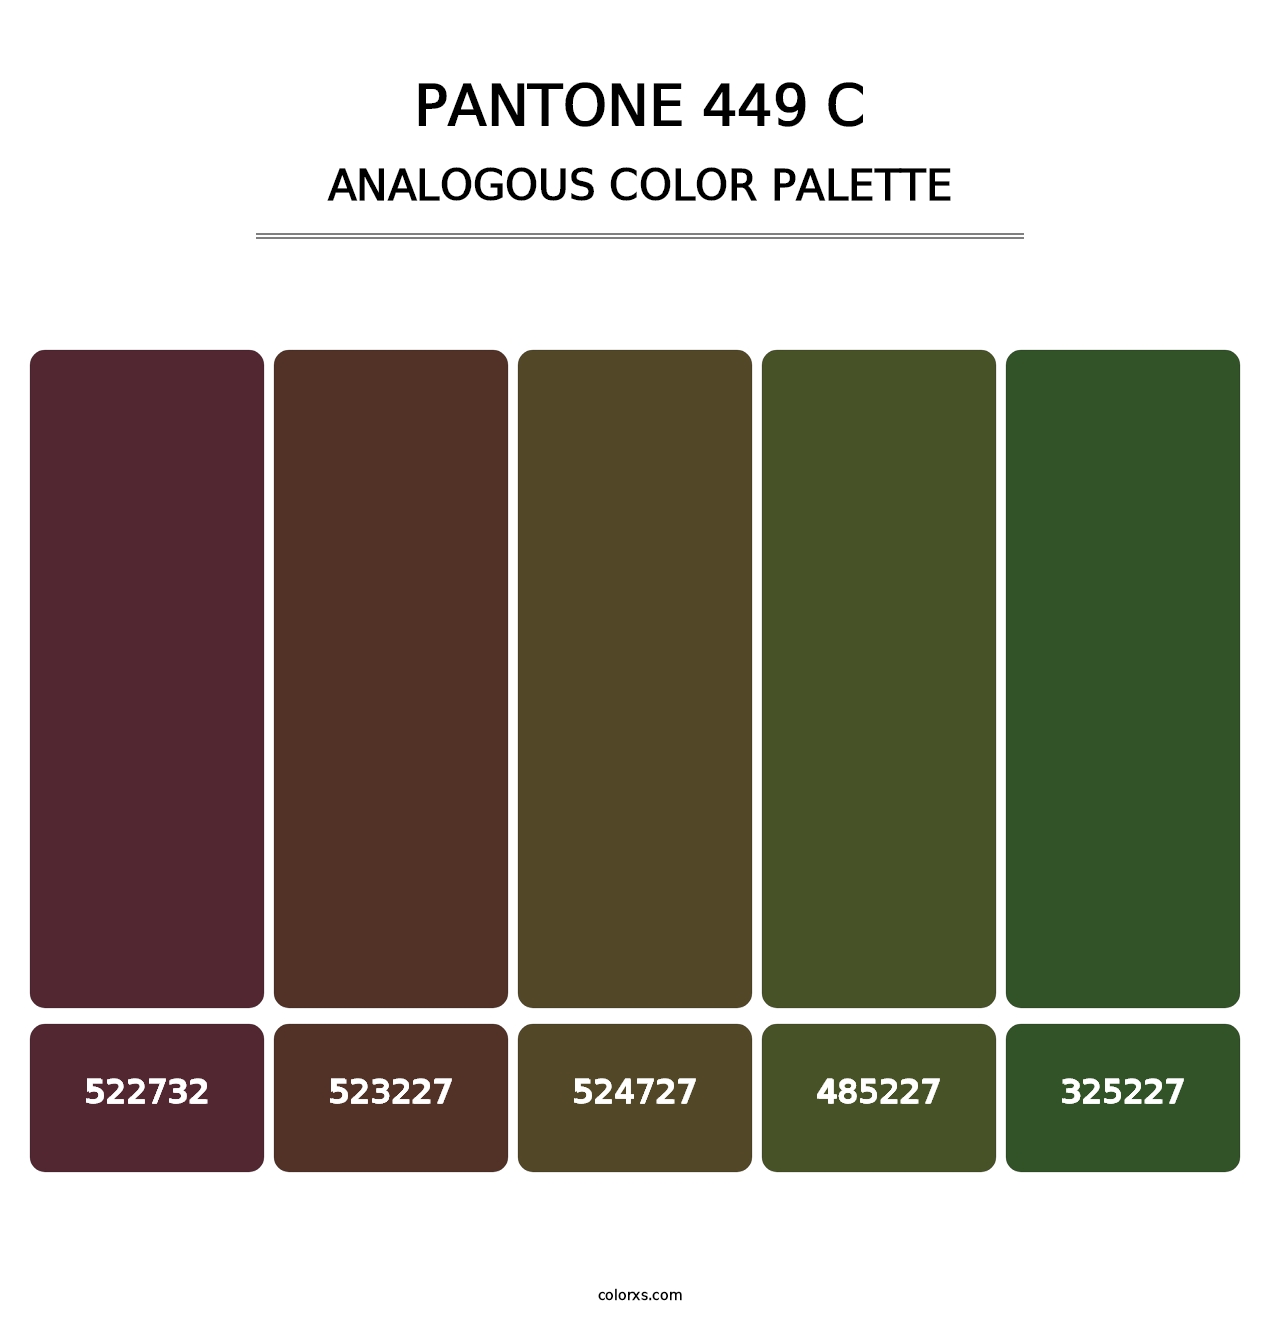 PANTONE 449 C - Analogous Color Palette